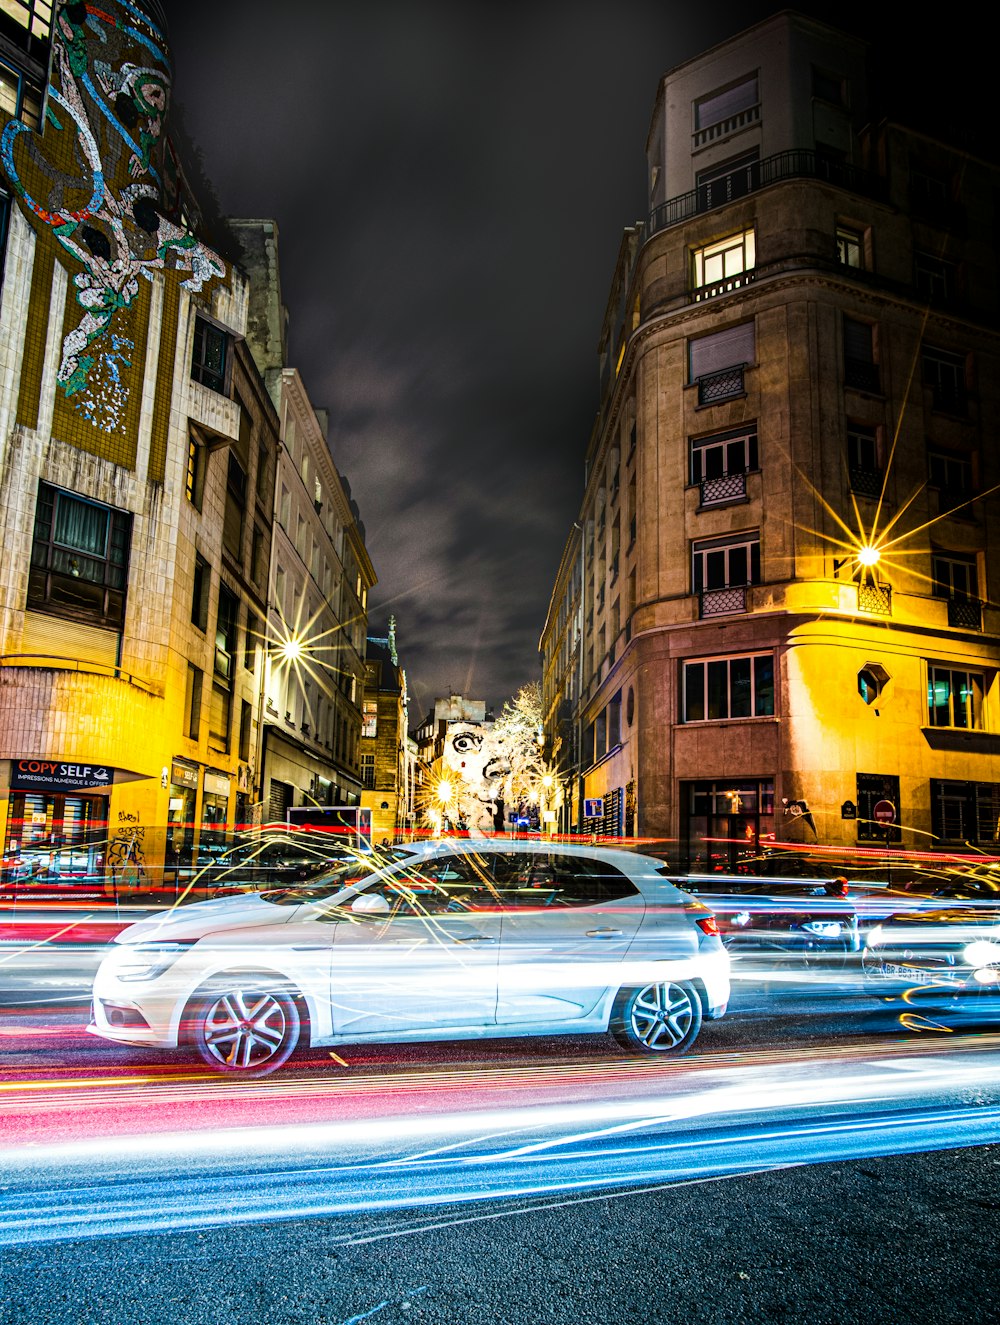 Photographie en accéléré de véhicules sur la route près d’immeubles de grande hauteur pendant la nuit